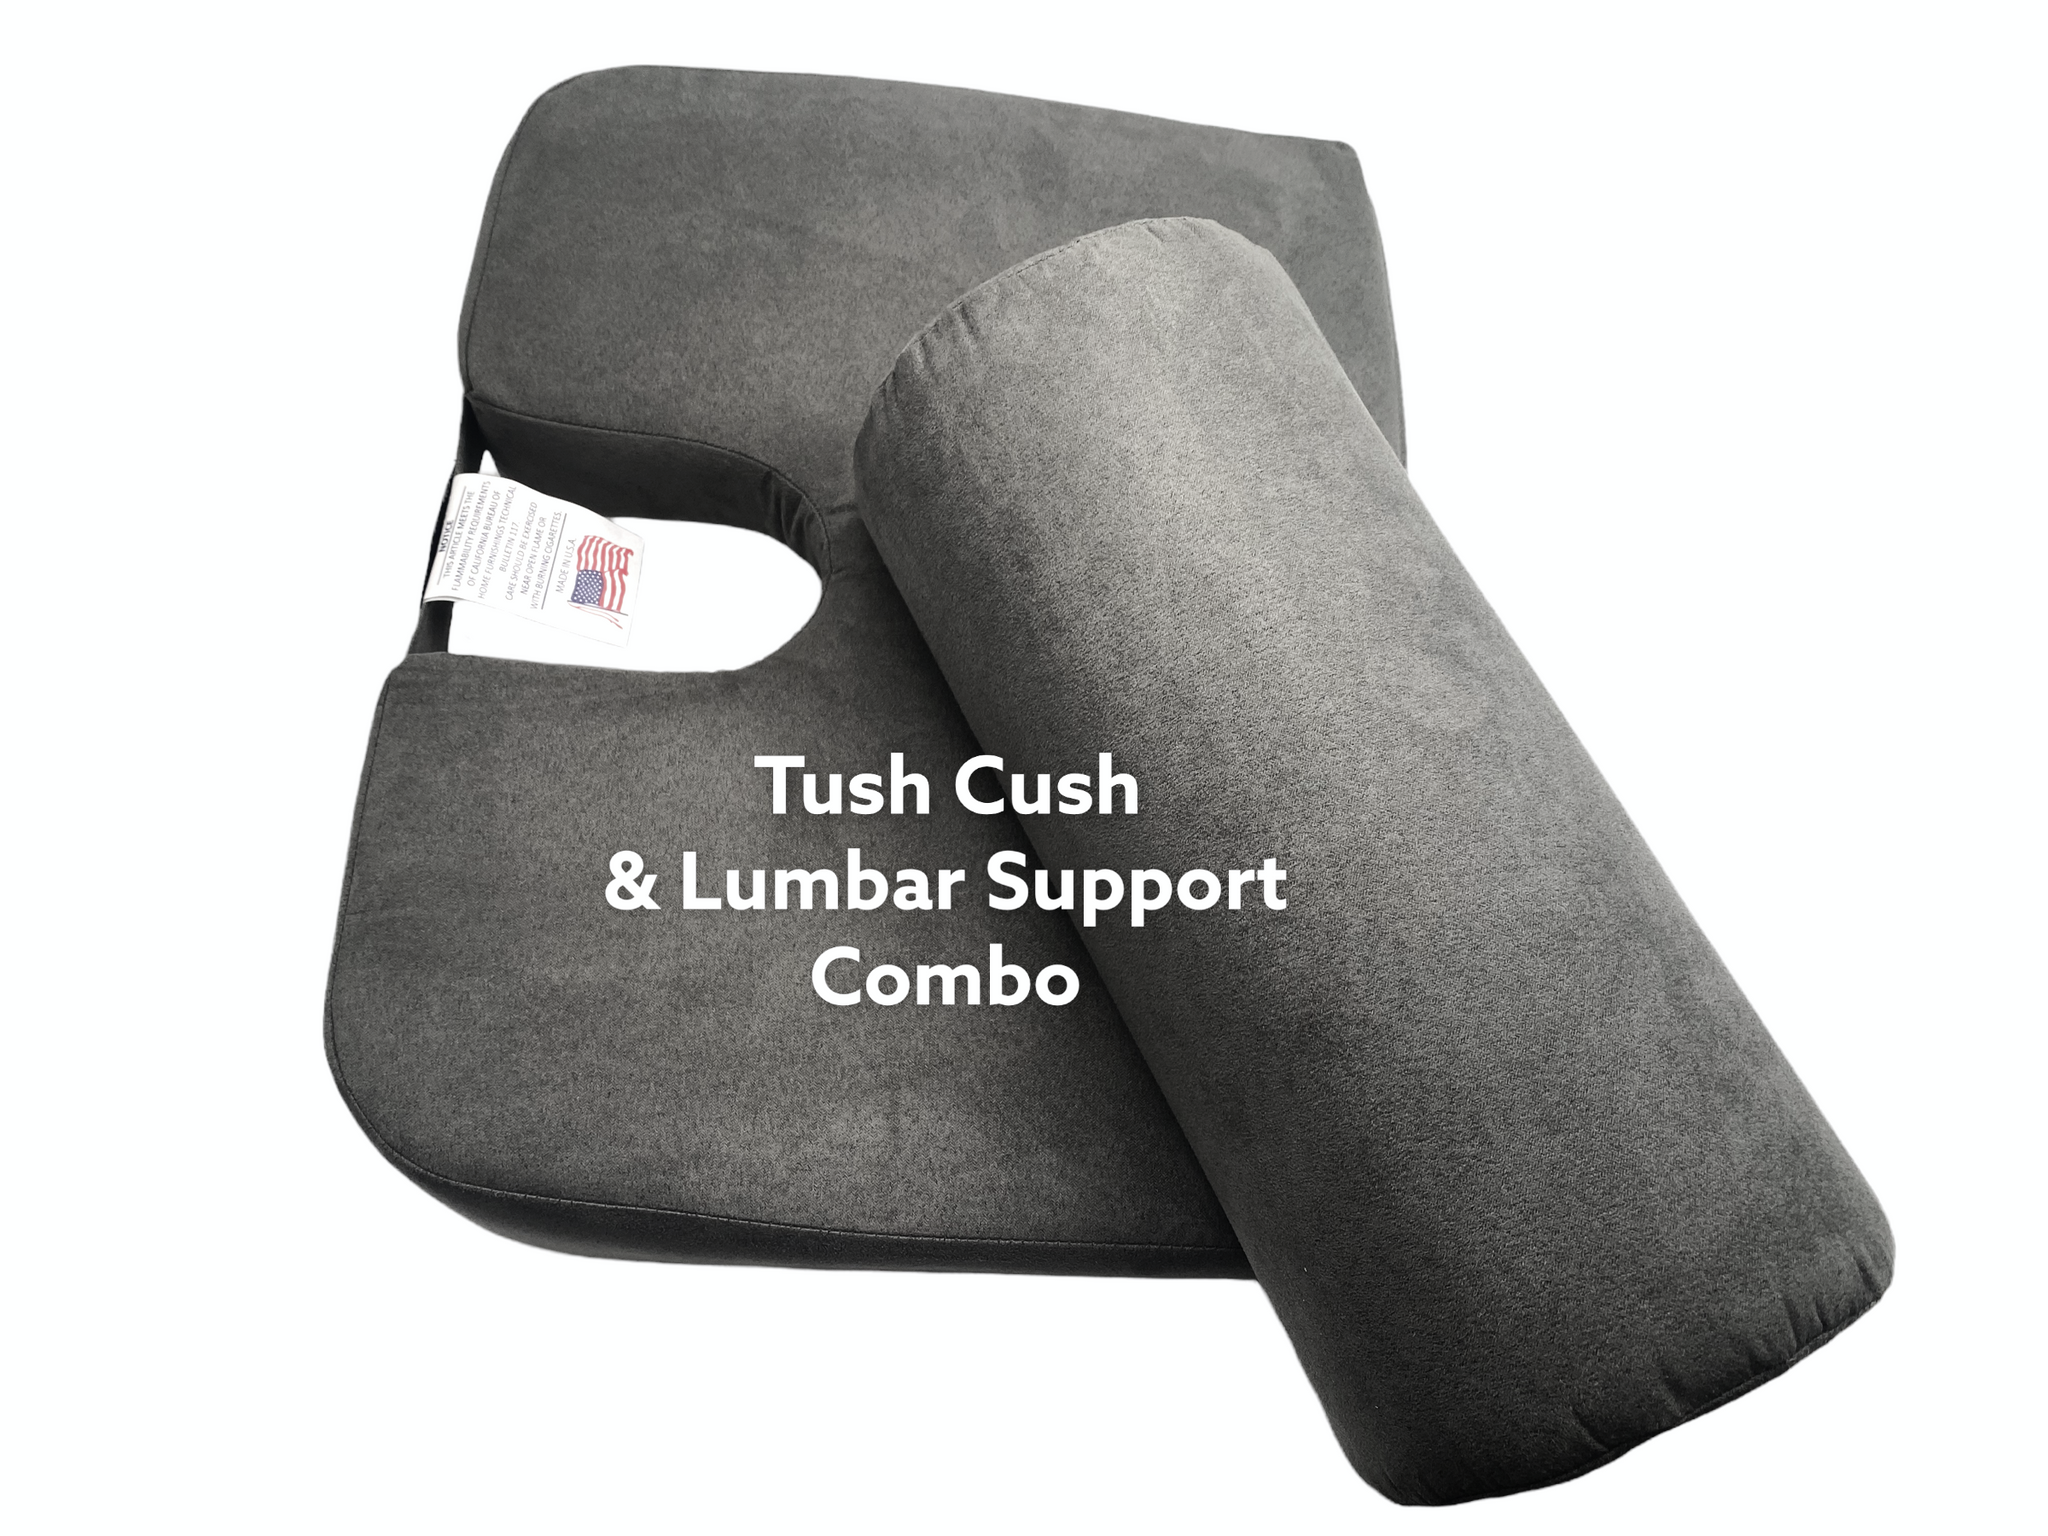 Save! Tush Cush and Lumbar Support Combo (Regular Price $79)